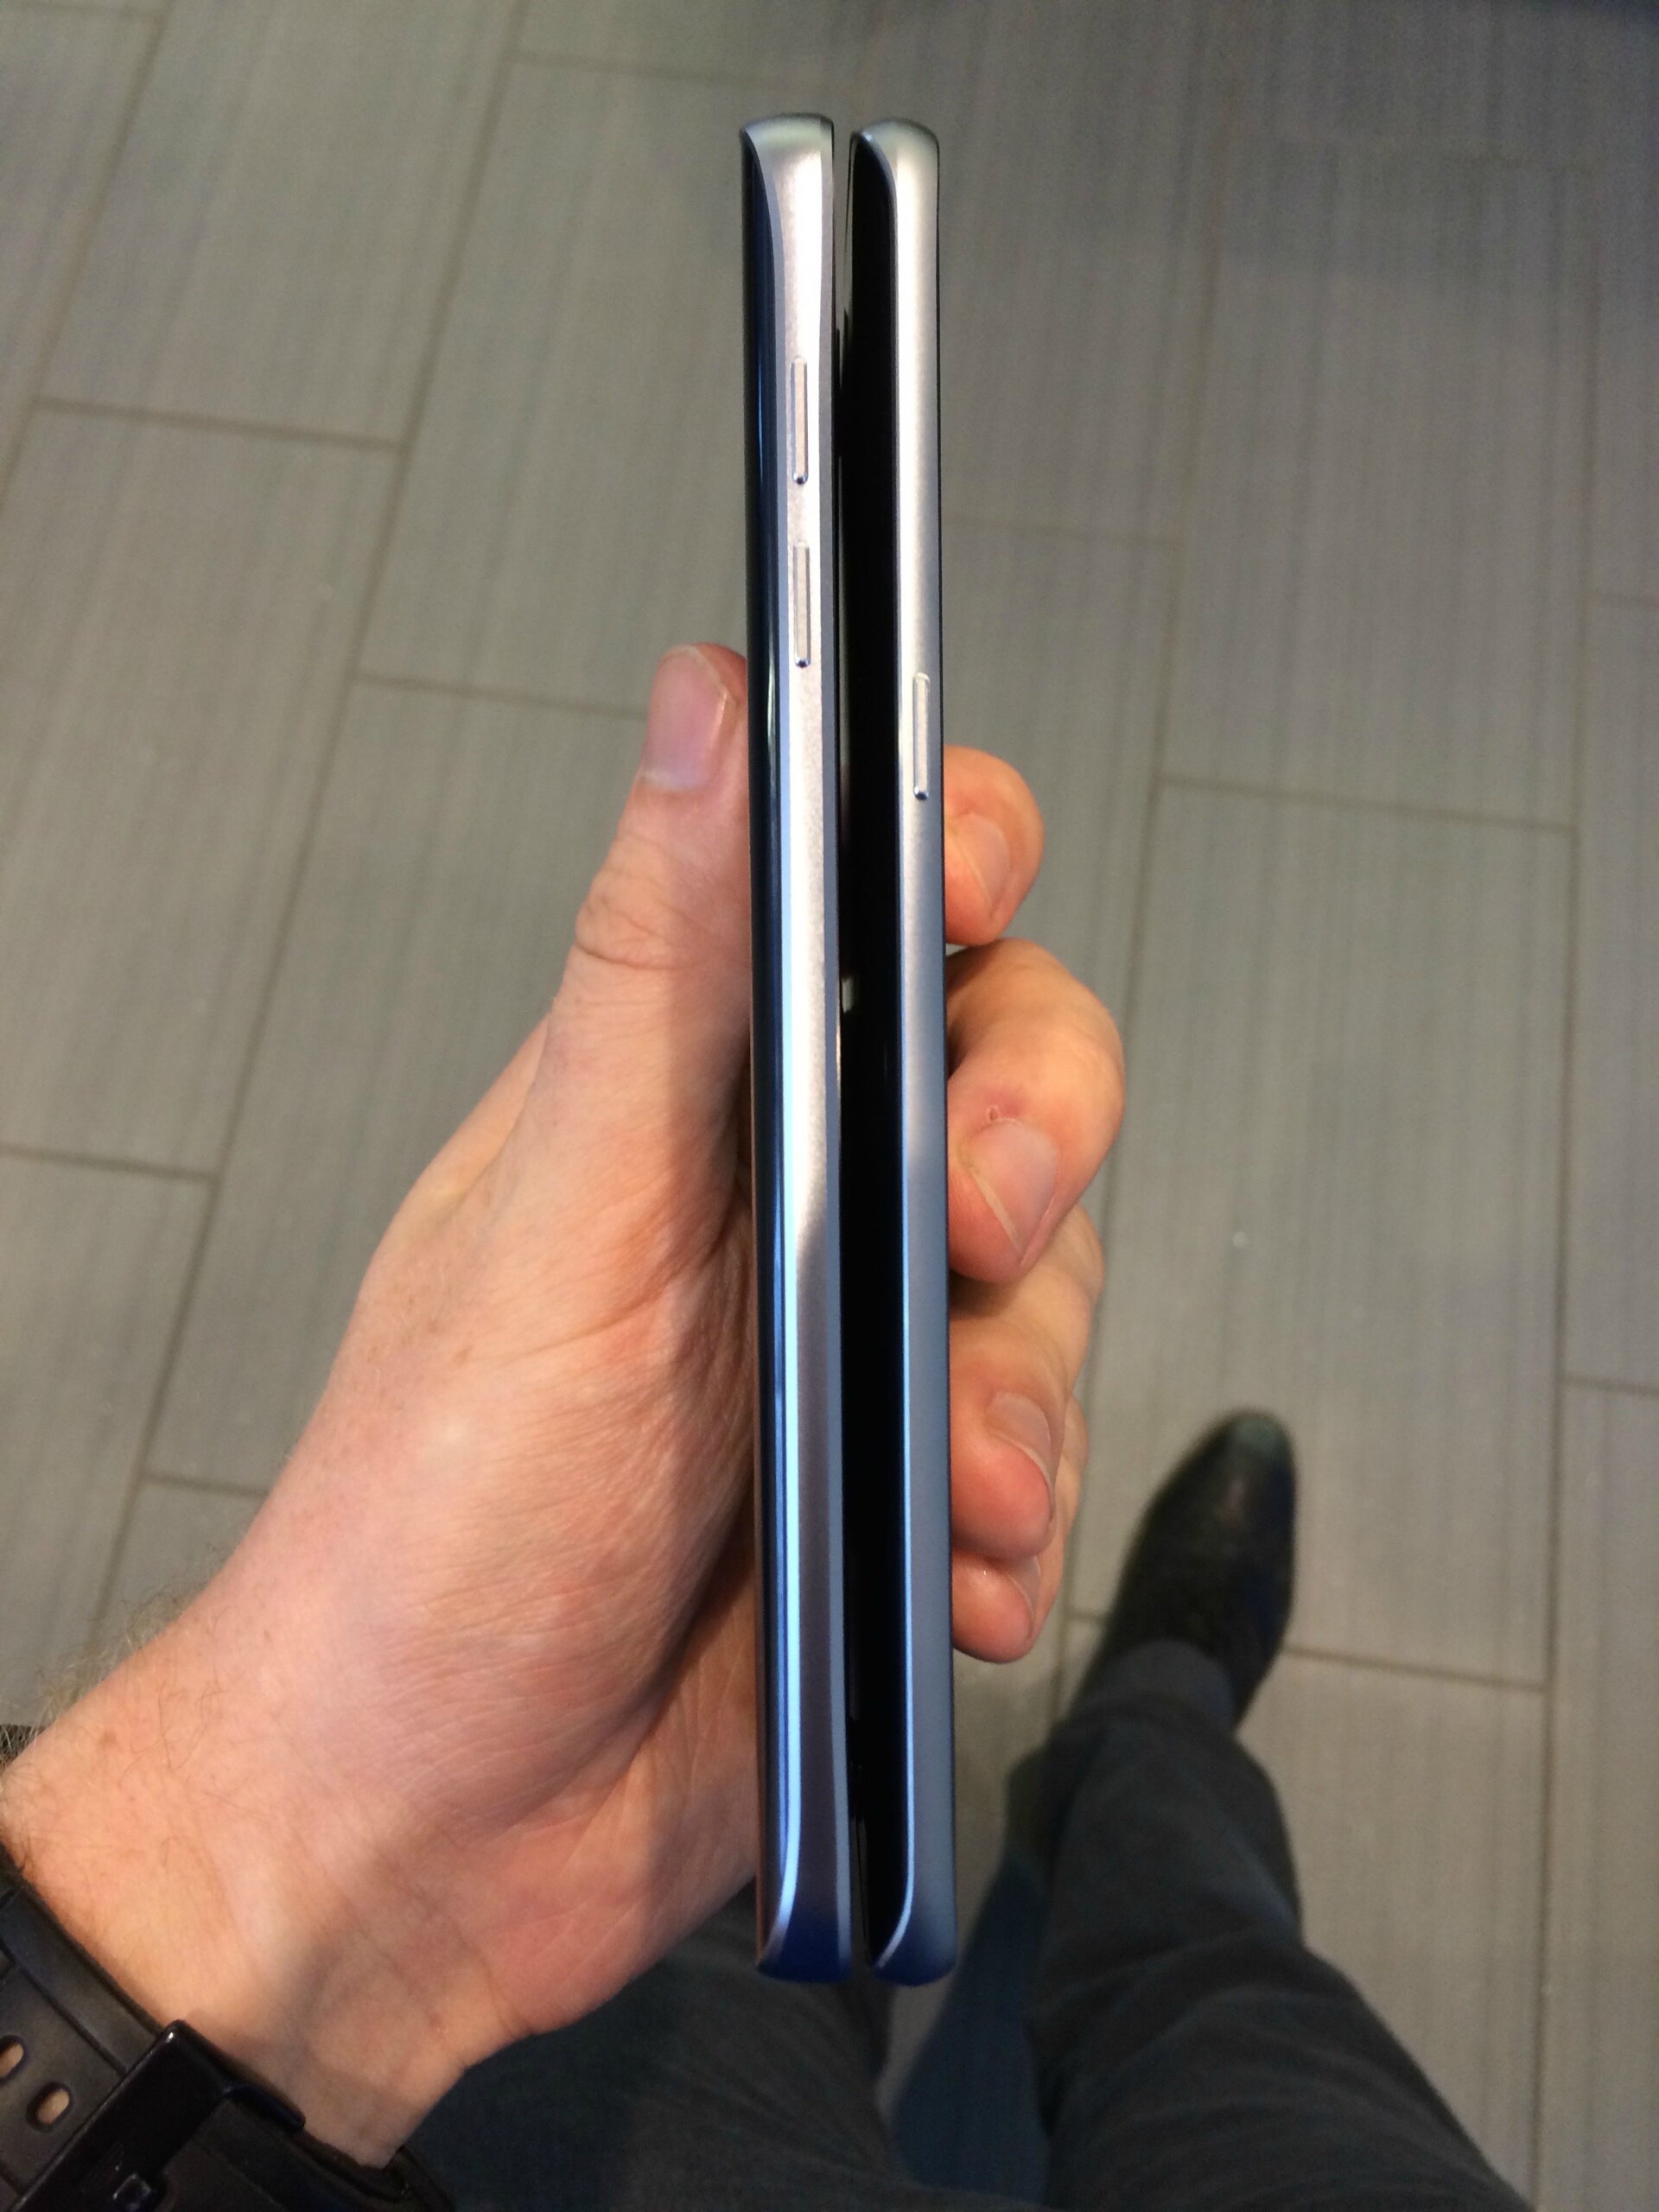 เห็นหมดแล้ว Samsung Galaxy Note 5 คราวนี้มาทั้งกล่อง ทั้งตัวเครื่องแบบชัดเจนเลยนะครับแหม่!!!